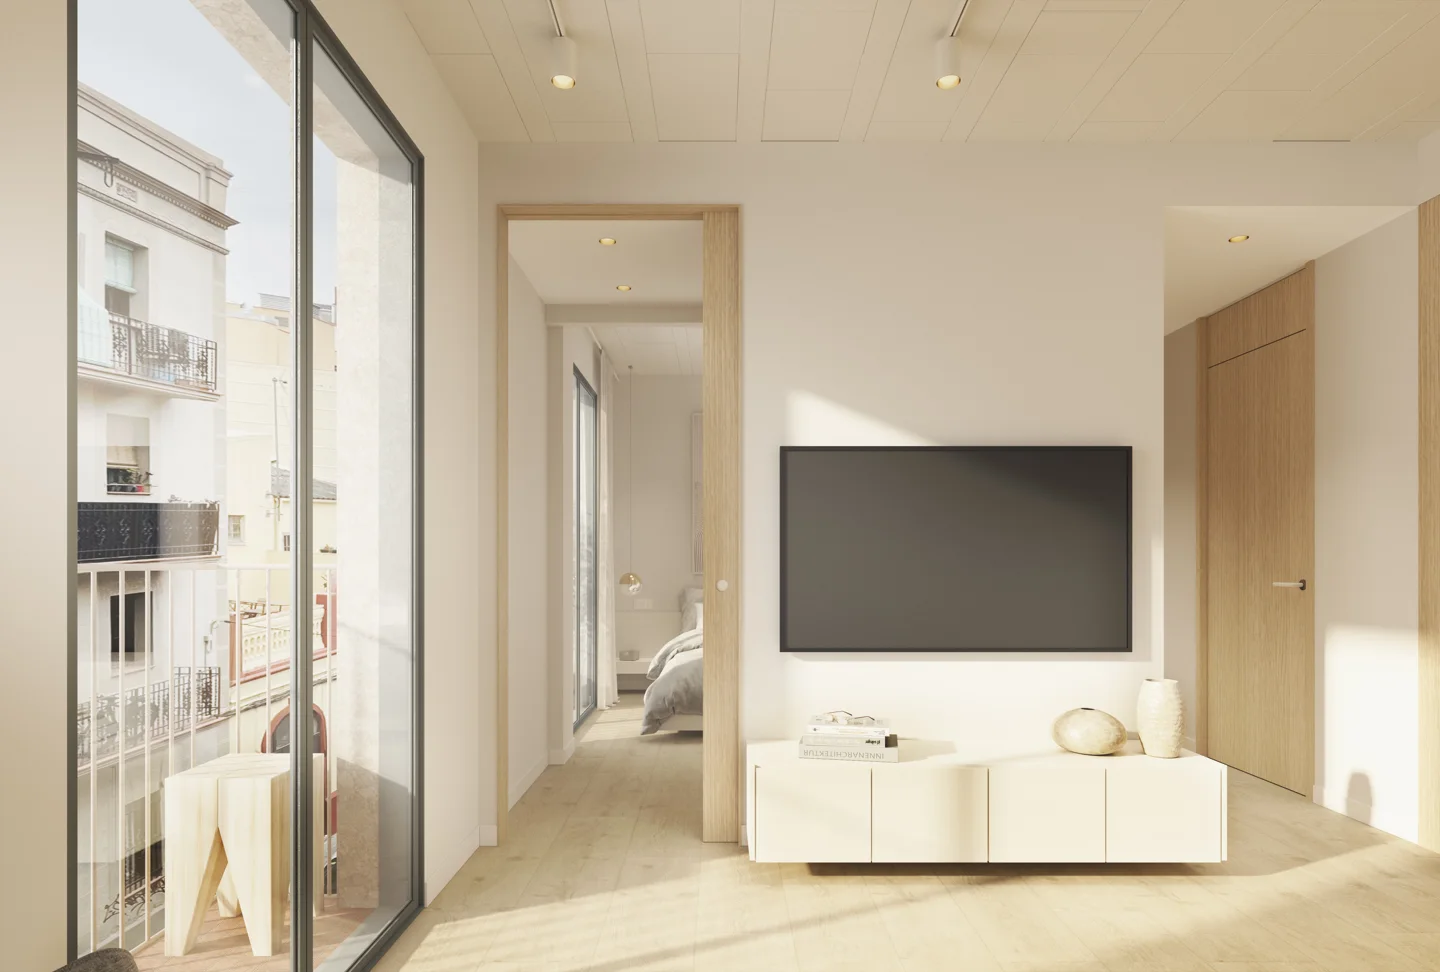 Elegante piso de 1 dormitorio de obra nueva en Sant Martí